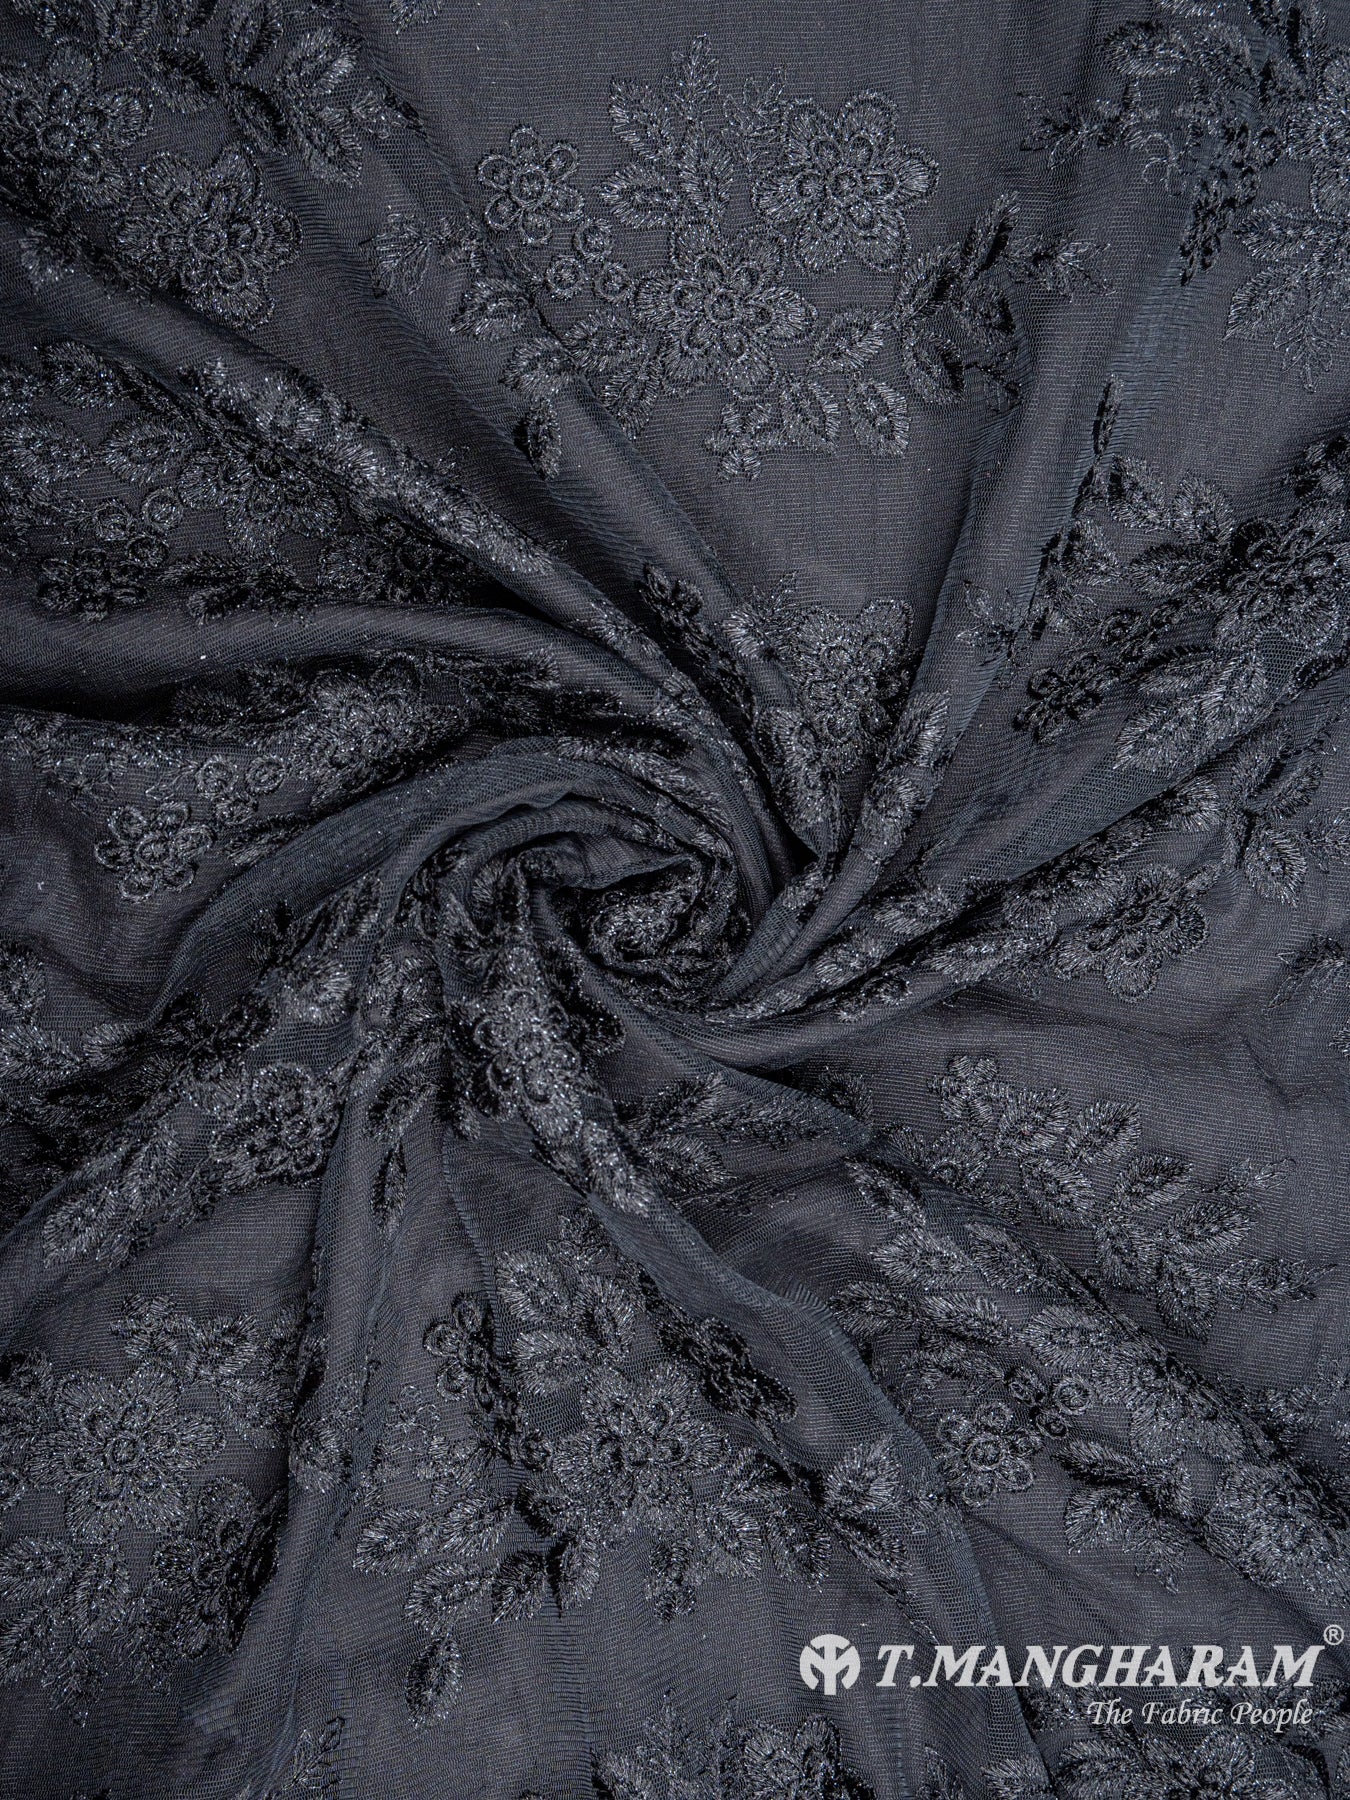 Black Fancy Net Fabric - EC5742 view-1